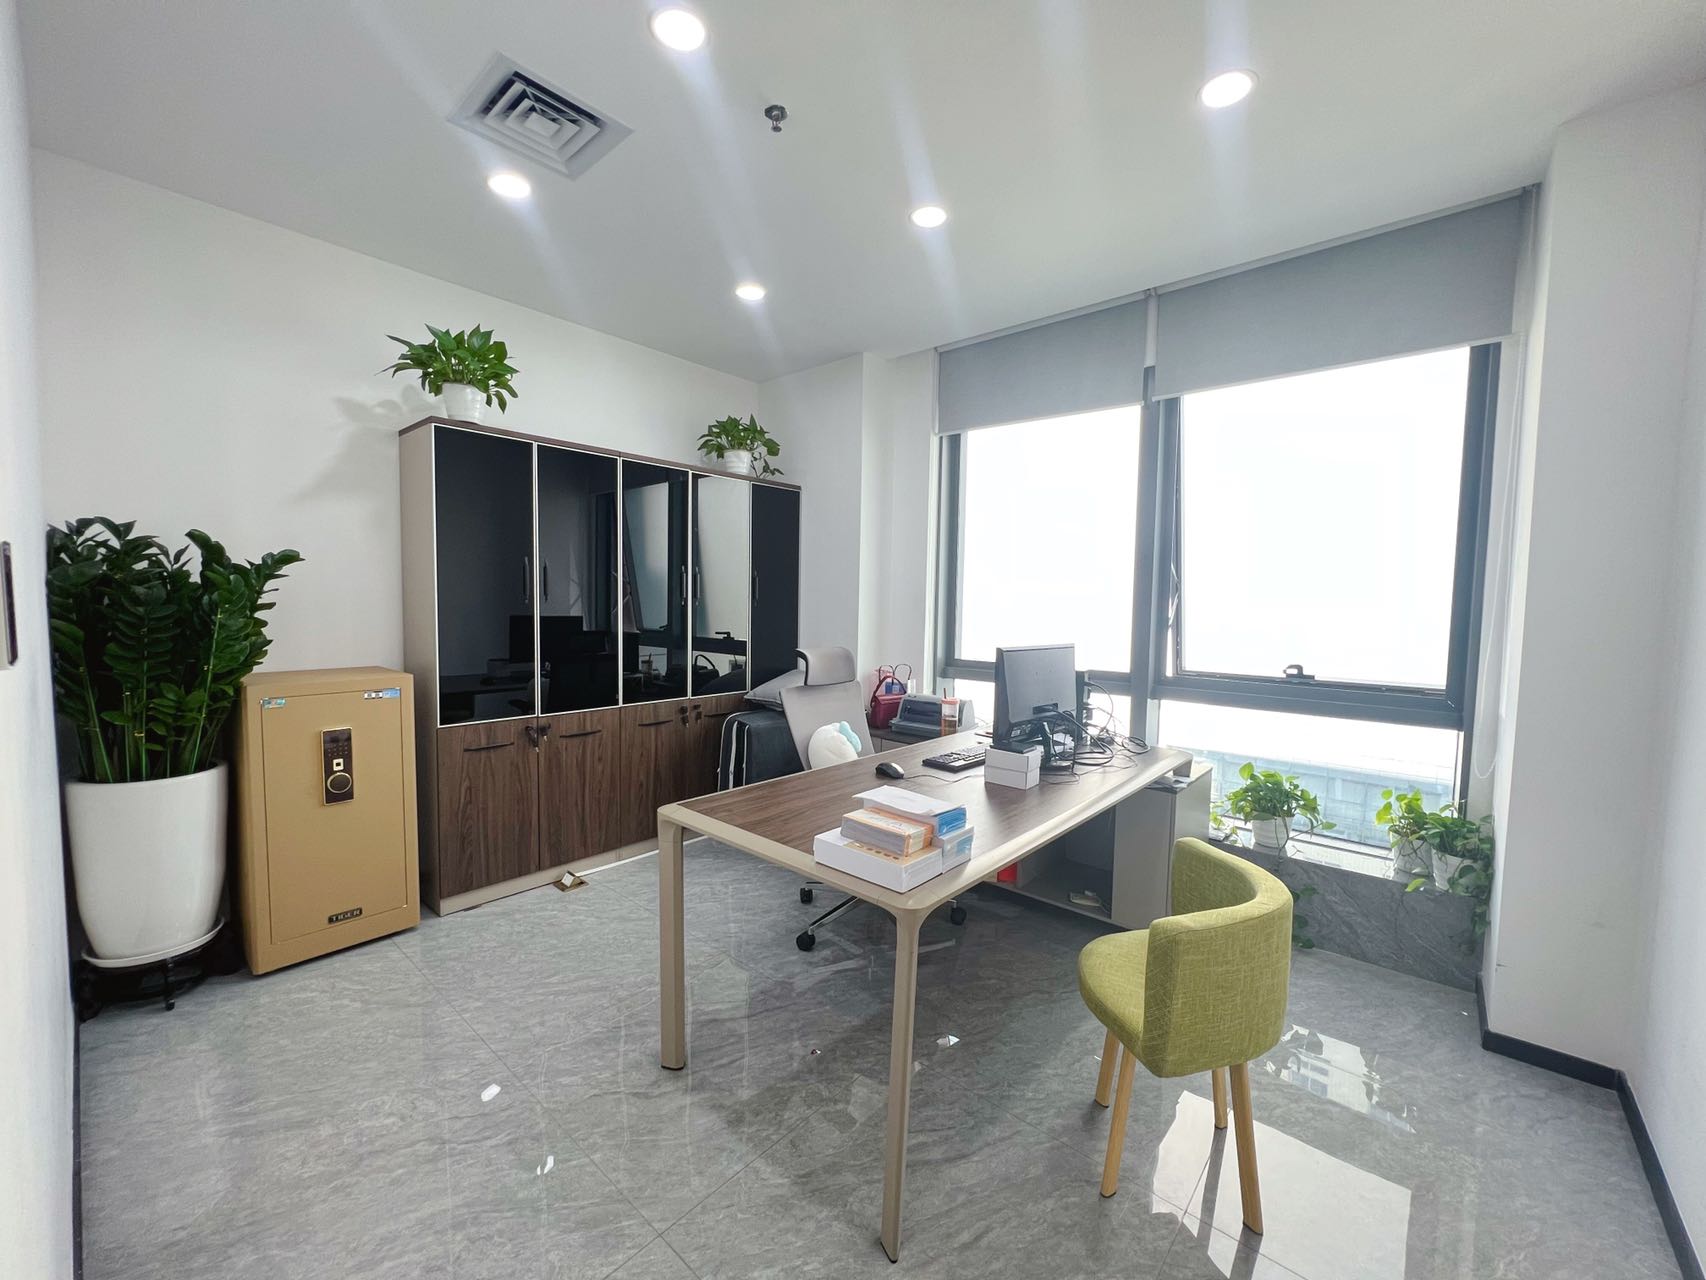 科技园高新园小面积带隔间精装修办公室出租。